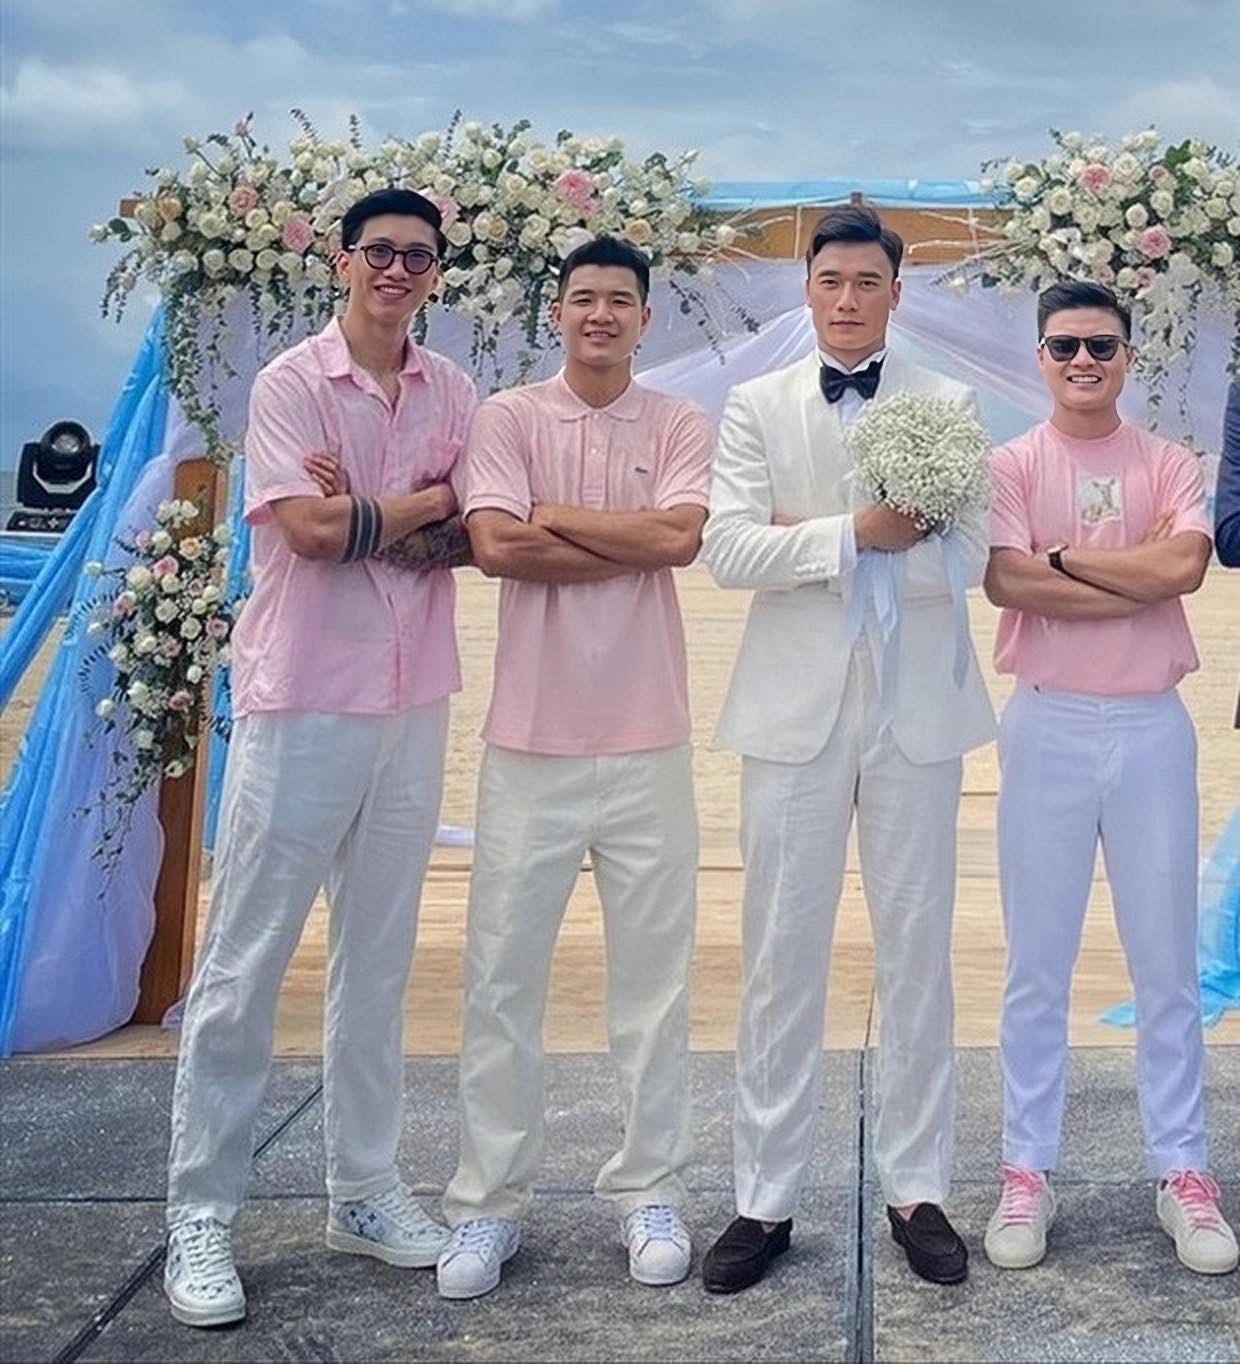 Dàn khách mời 'khủng' dự đám cưới ở Hà Nội của Đoàn Văn Hậu và Doãn Hải My được netizen dự đoán - ảnh 6